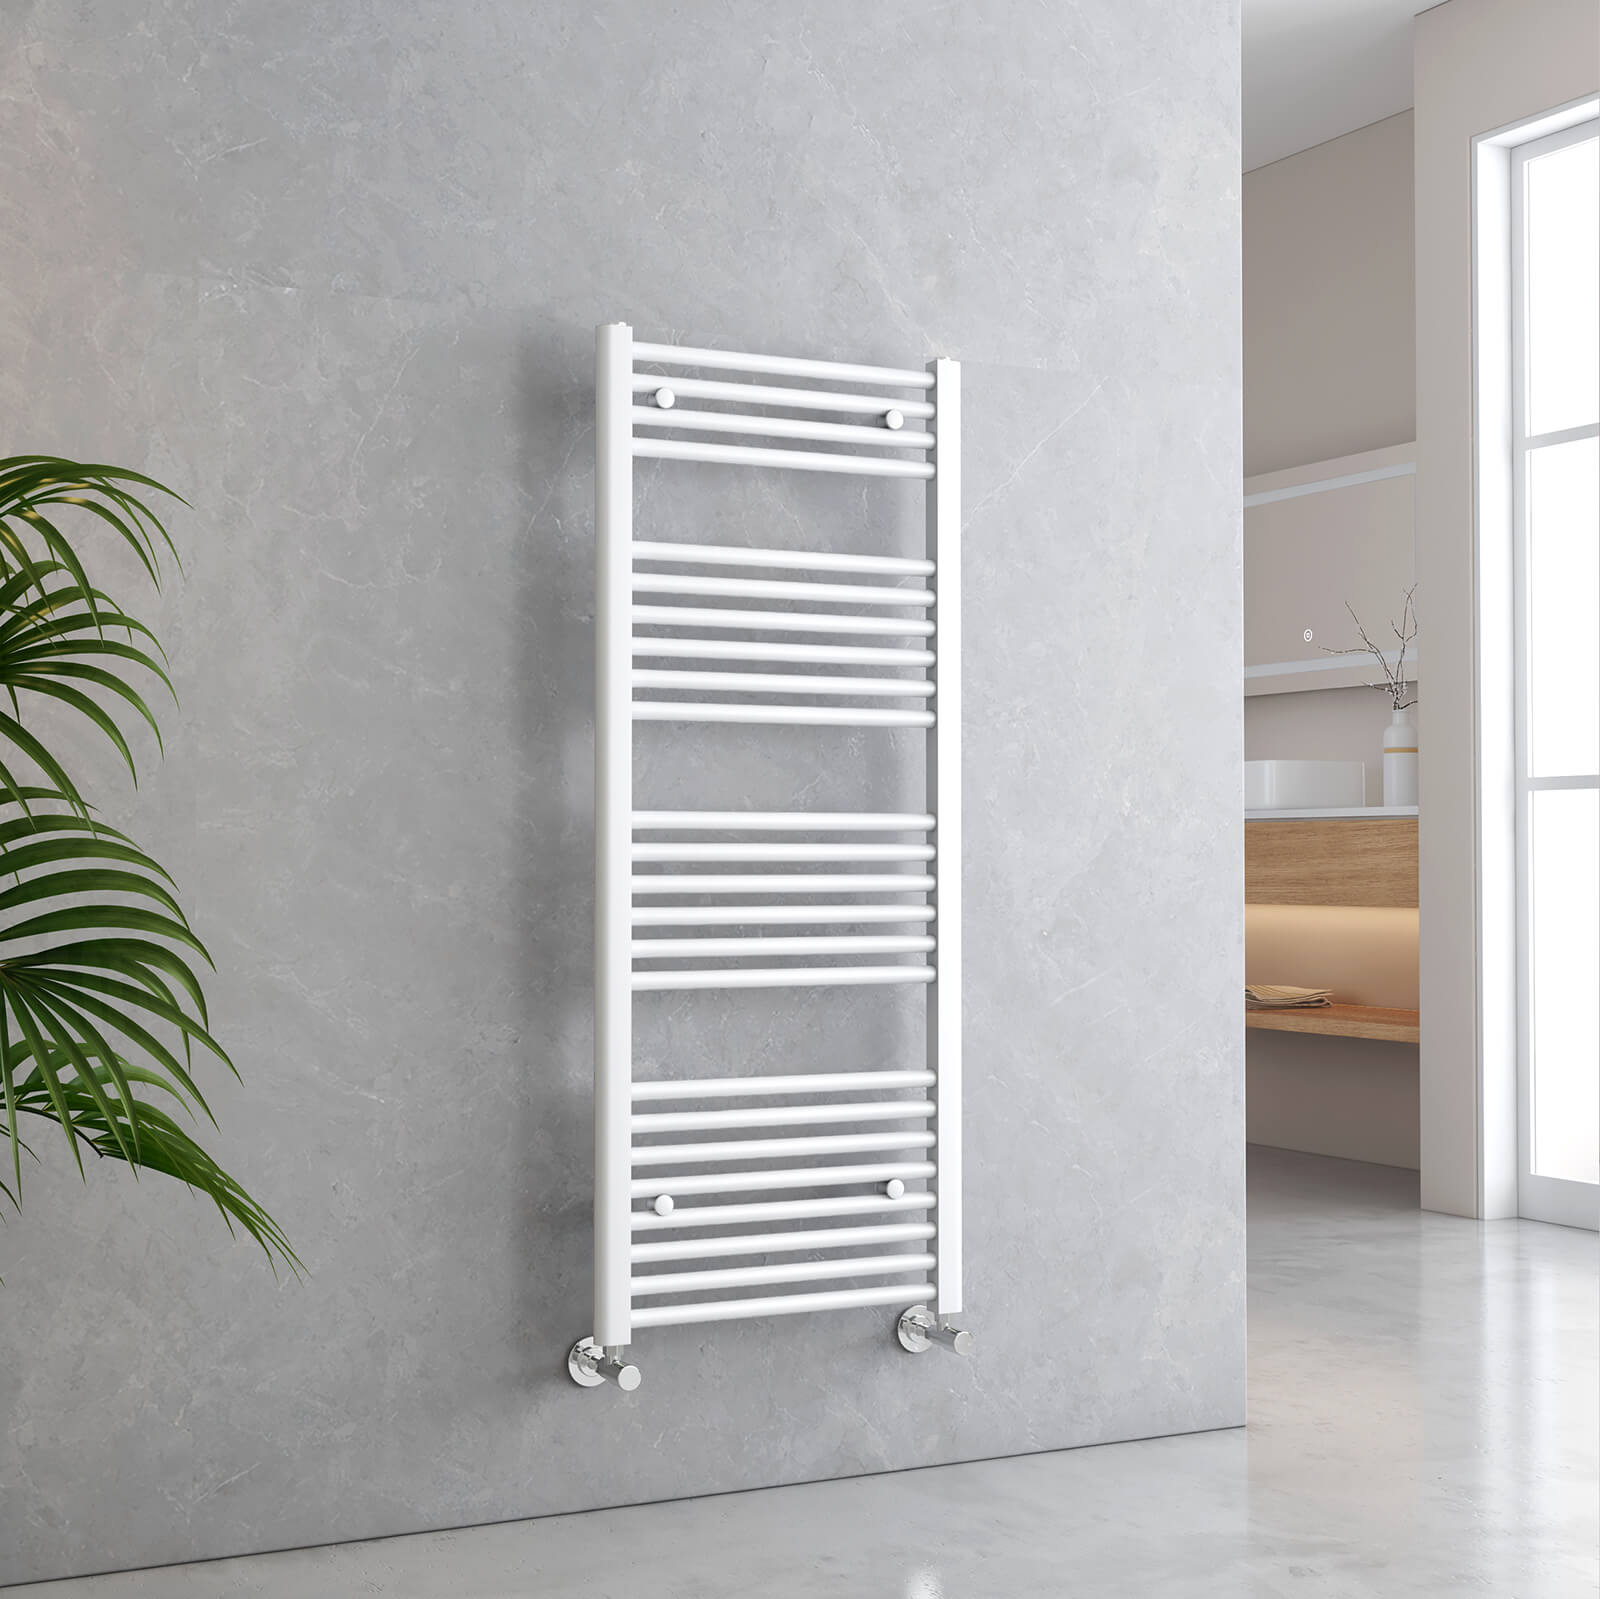 emke towel radiator for bathroom utr1250s1w